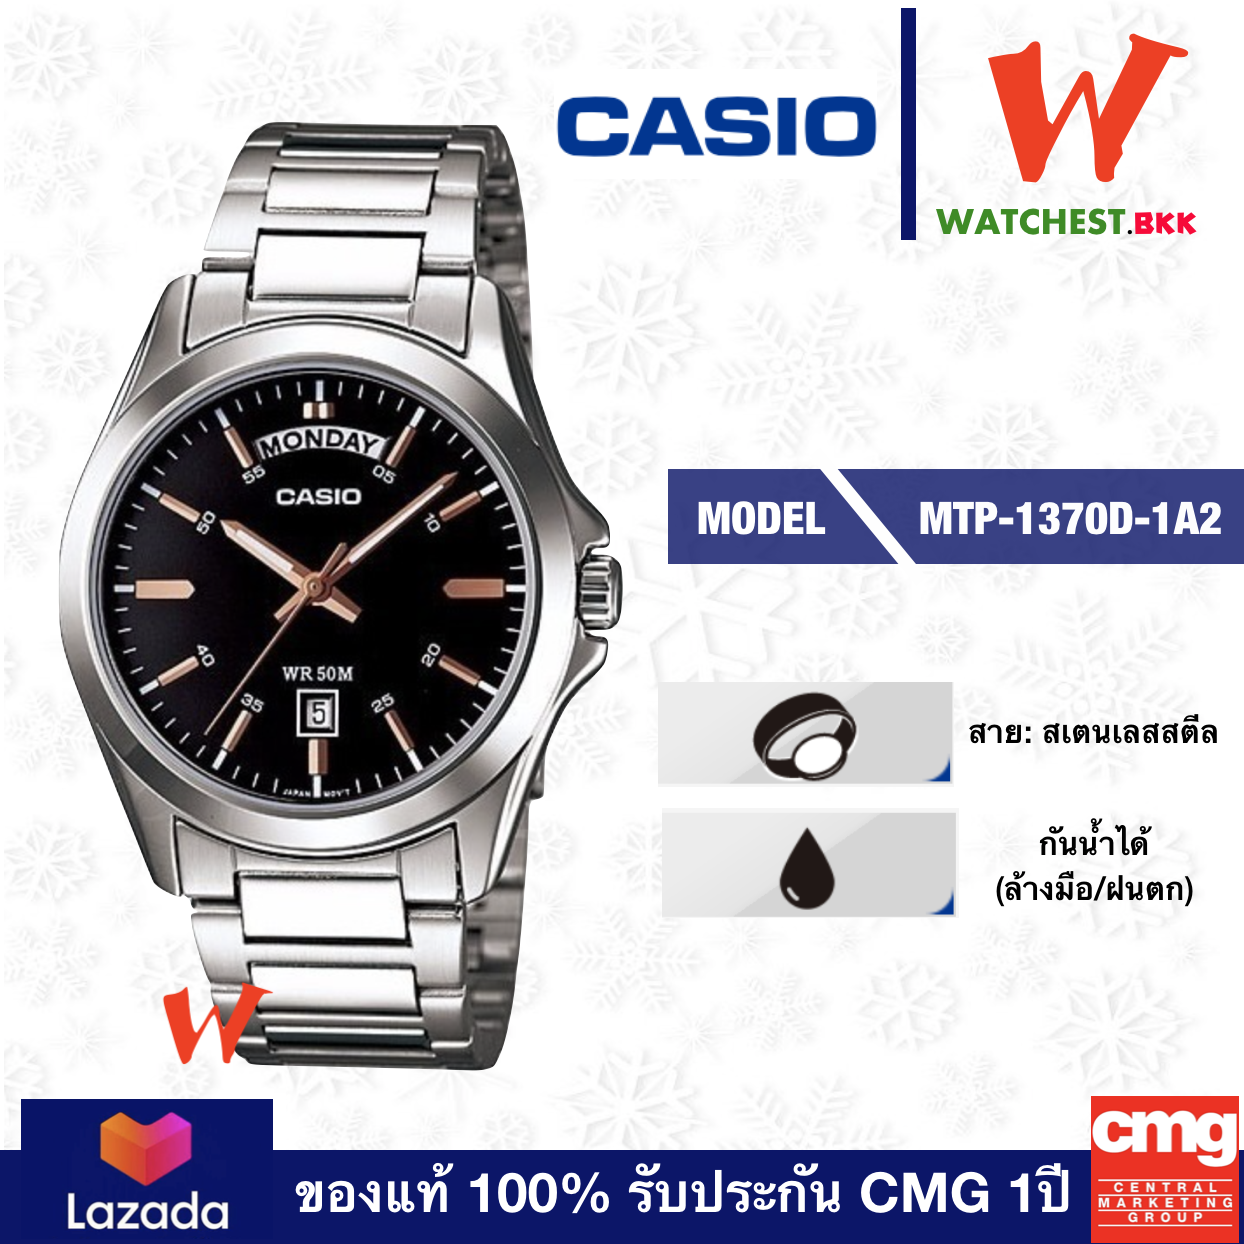 casio นาฬิกาข้อมือผู้ชาย สายสเตนเลส รุ่น MTP-1370D-1A2 คาสิโอ้ สายเหล็ก ตัวล็อกแบบ บานพับ (watchestbkk คาสิโอ แท้ ของแท้100% ประกัน CMG)